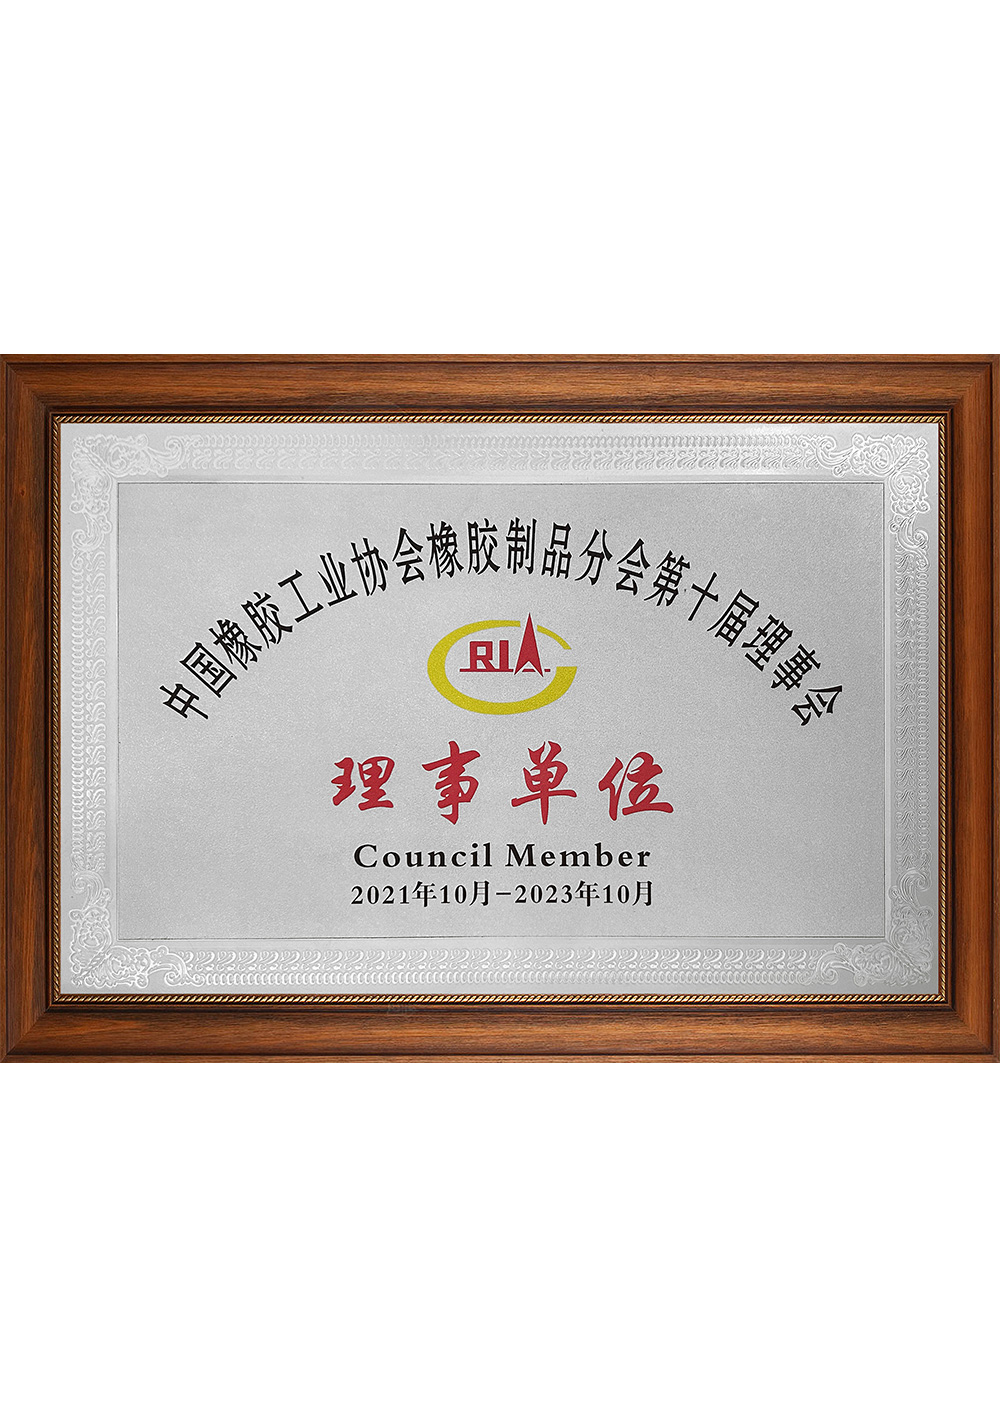 中国橡胶工业协会橡胶制品分会第十届理事会 理事单位202110-202310